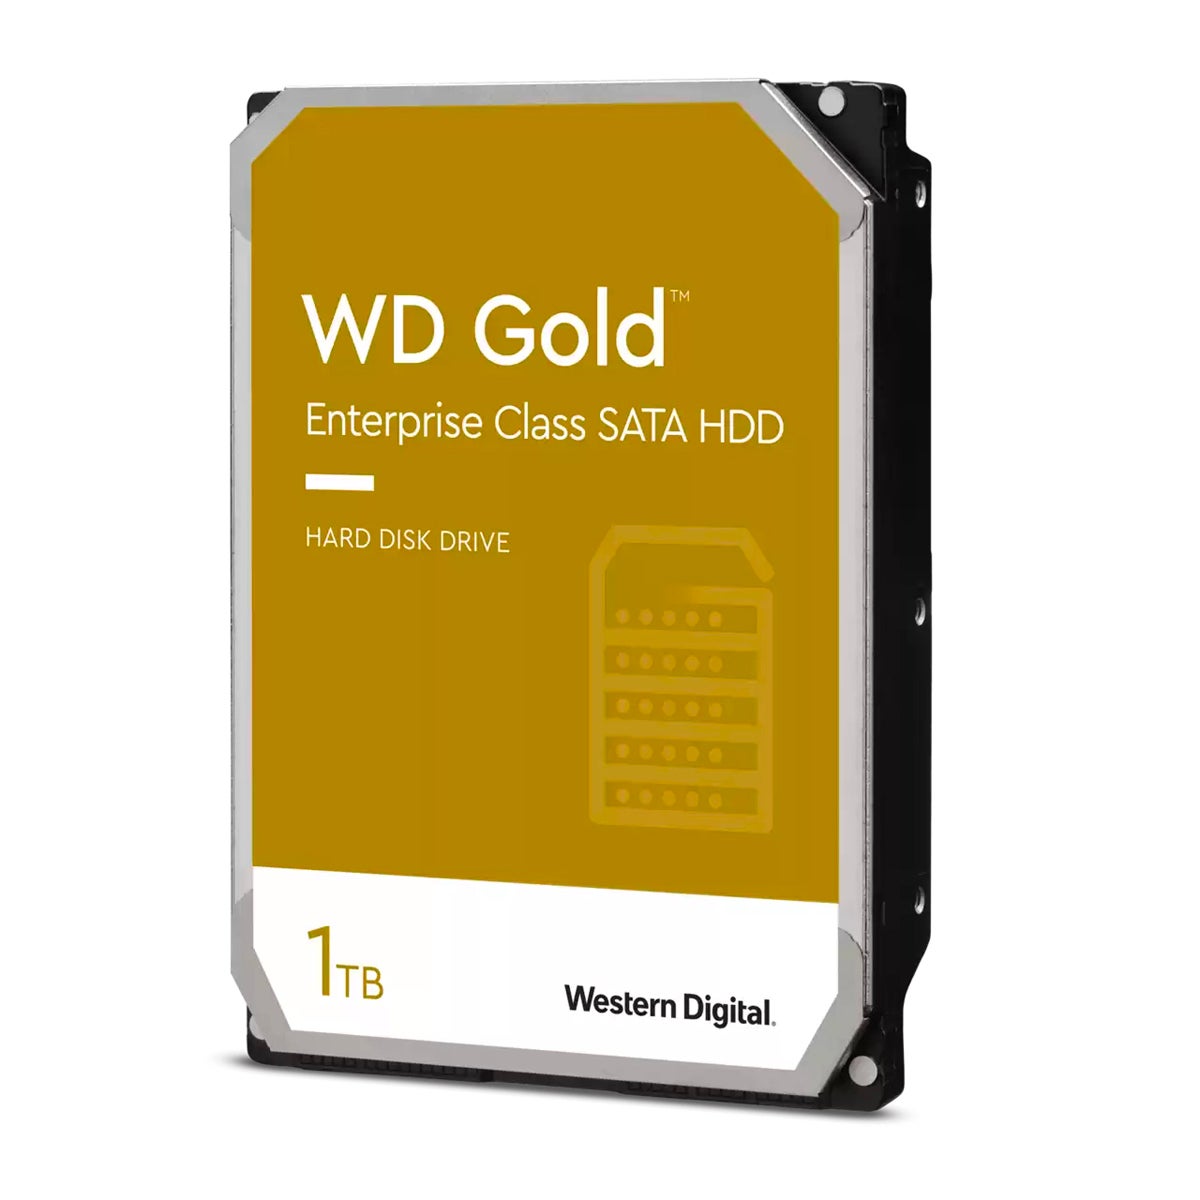 Western Digital Gold Series.